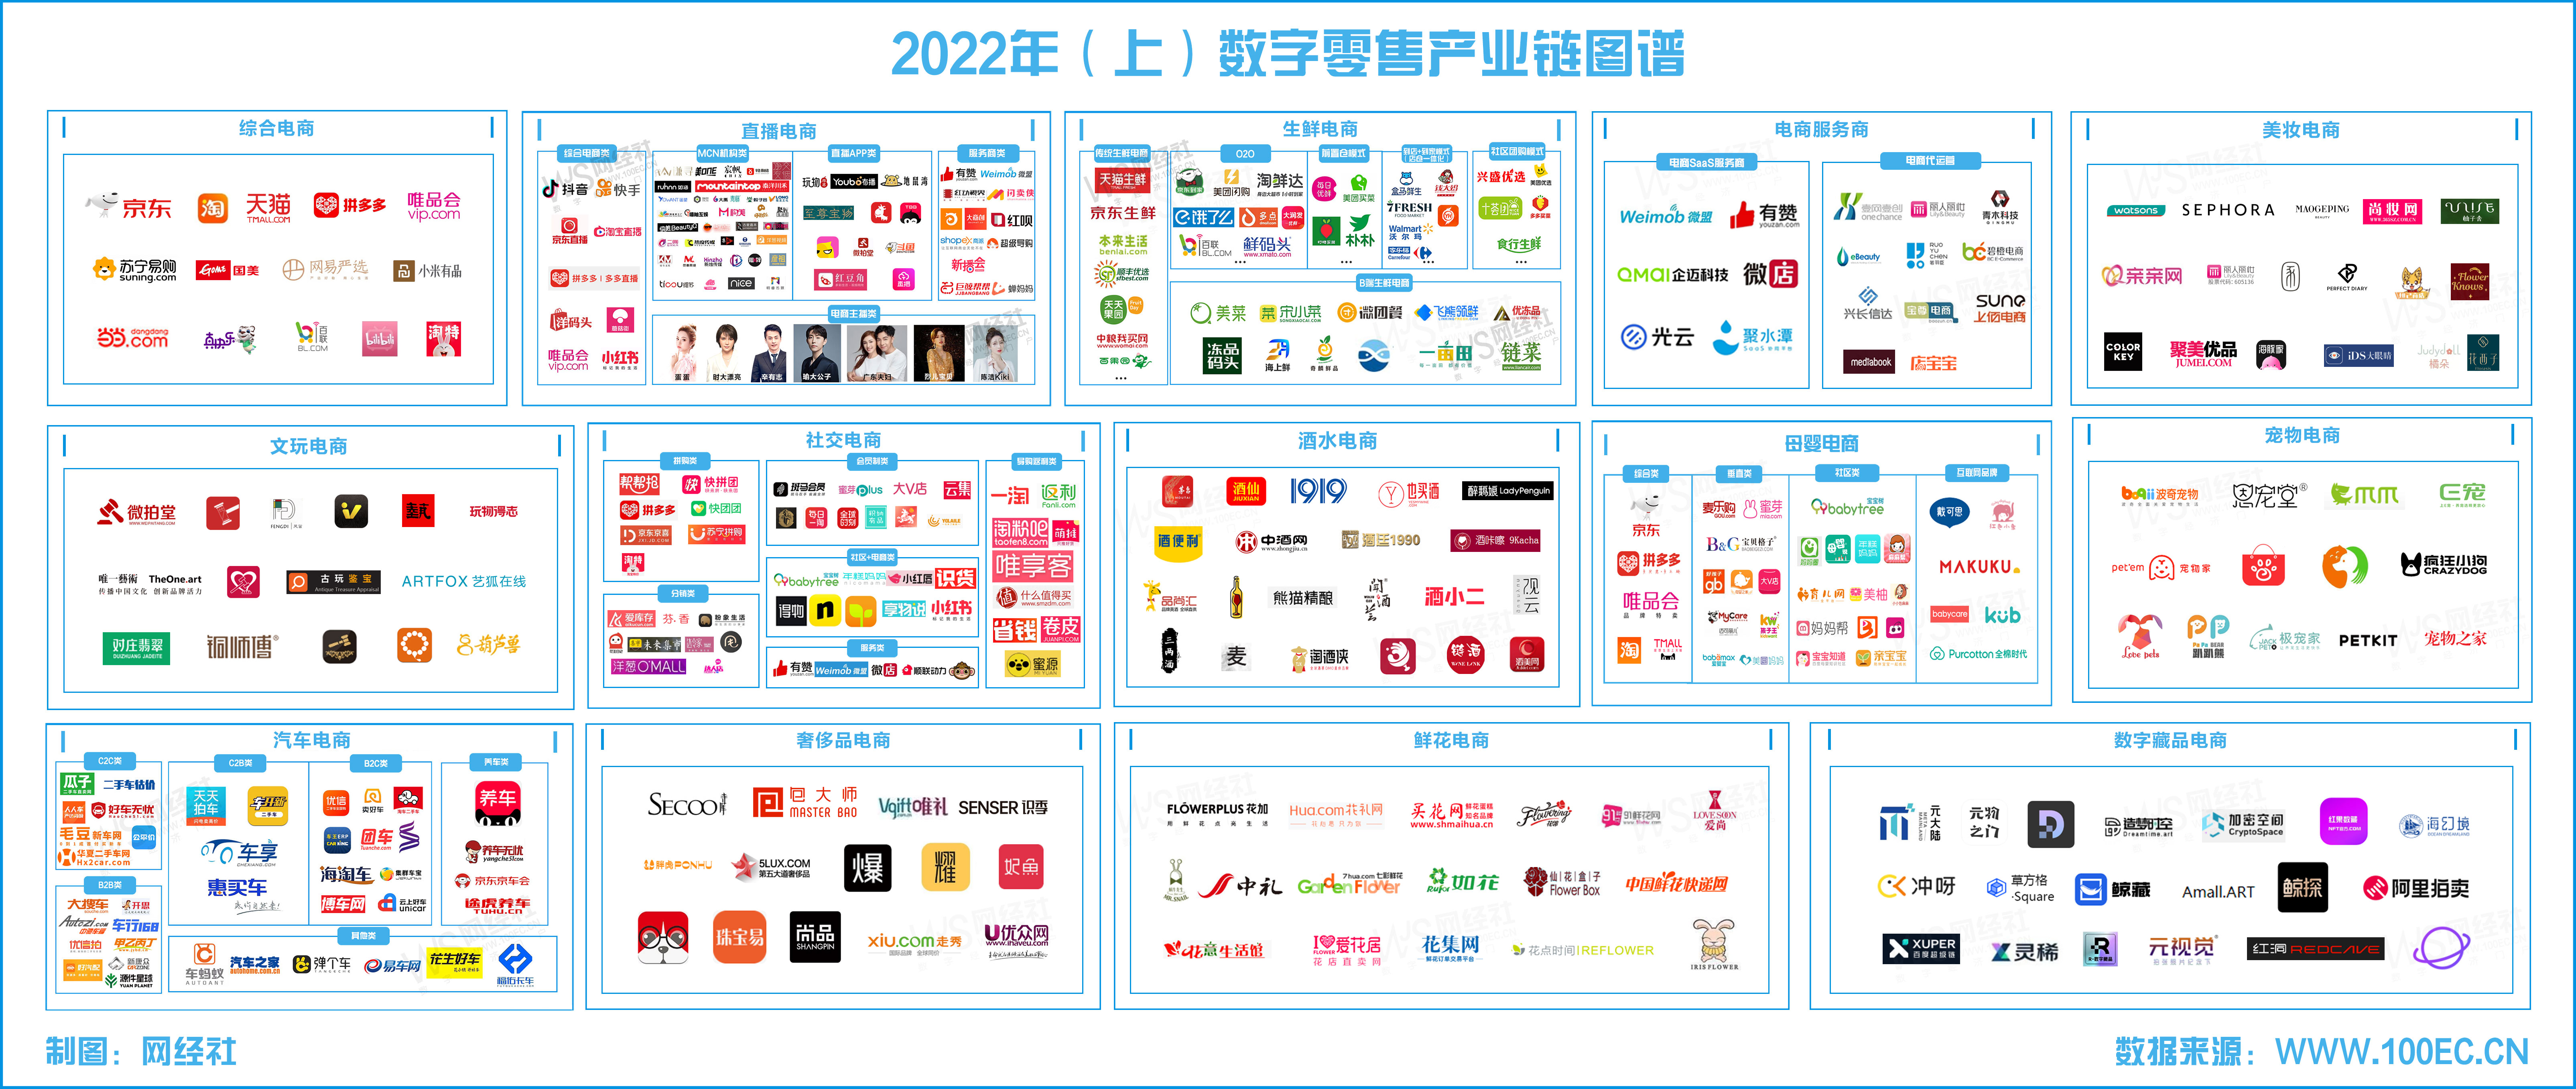 2022年零售电商产业链图谱(8).jpg